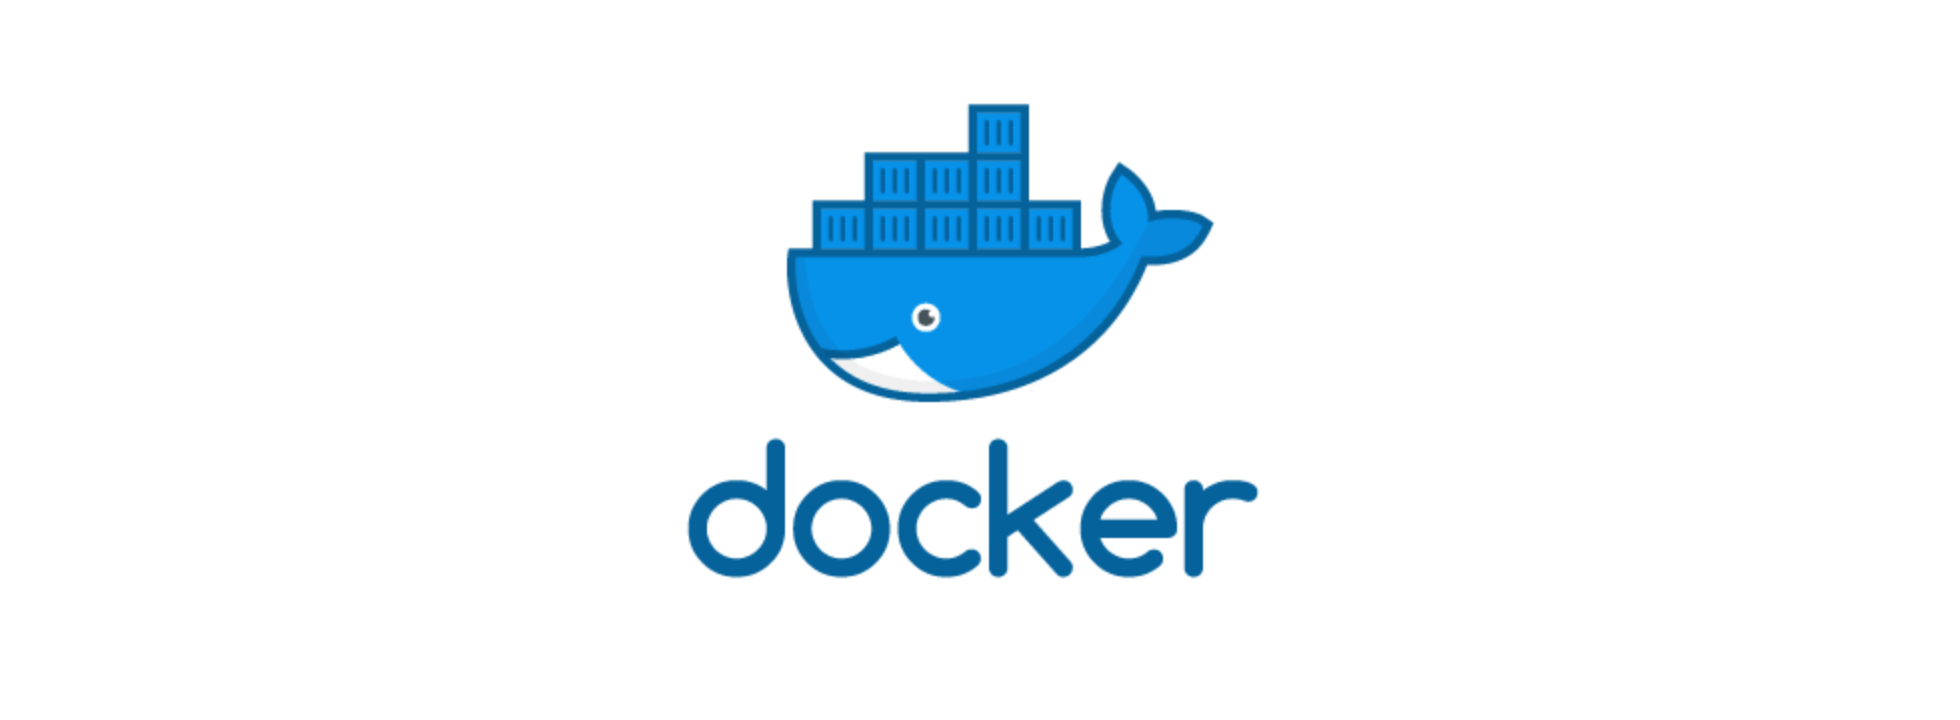 Docker wait. Docker exec. Docker шрифт. Docker символ. Docker без фона.